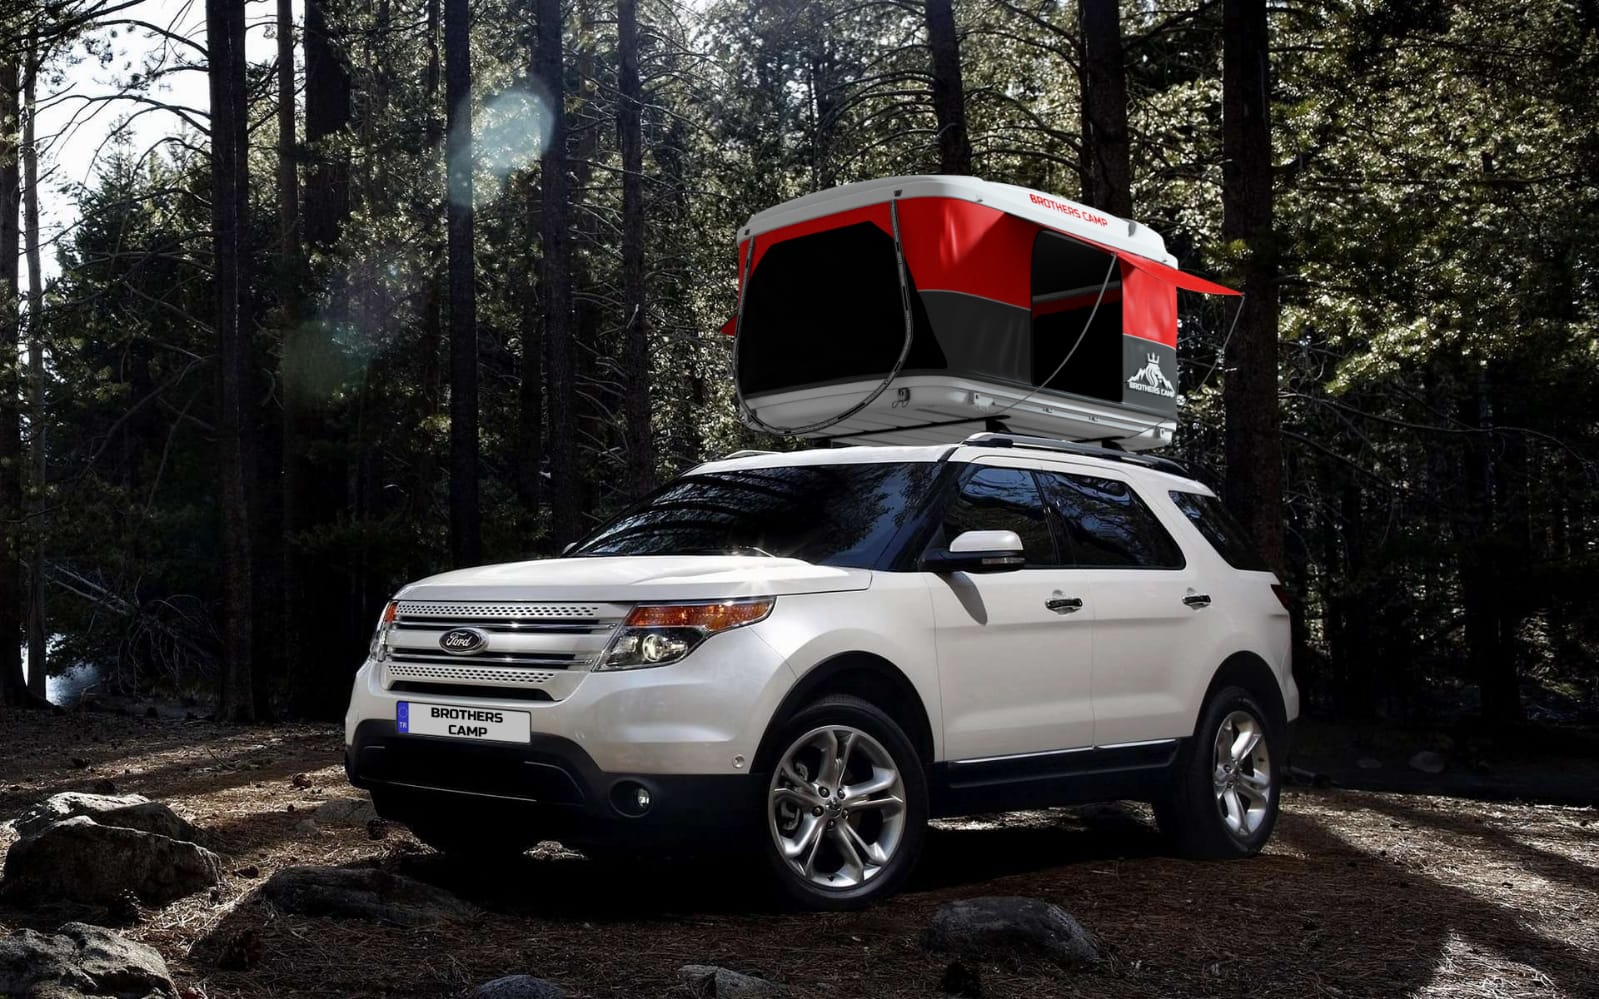 Bir Brothers Camp Araç Üstü Çadırının aracınız için uygun olup olmadığına nasıl karar verilir?